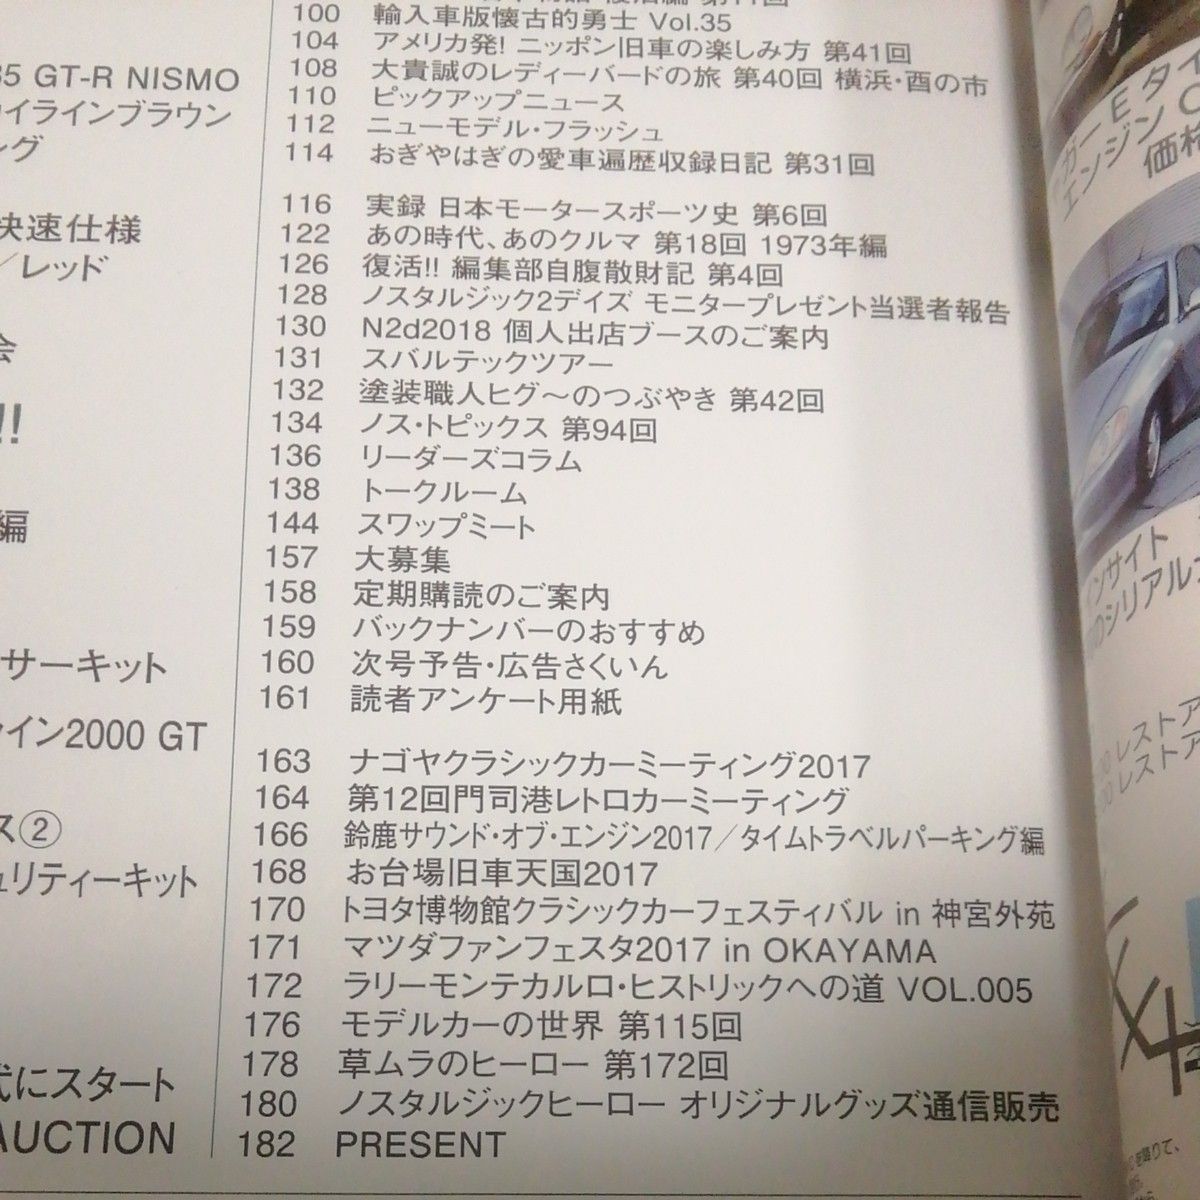 ノスタルジックヒーロー VOL185 GT-R伝説 スカイライン ケンメリ ハコスカ 芸文社 Nostalgic Hero